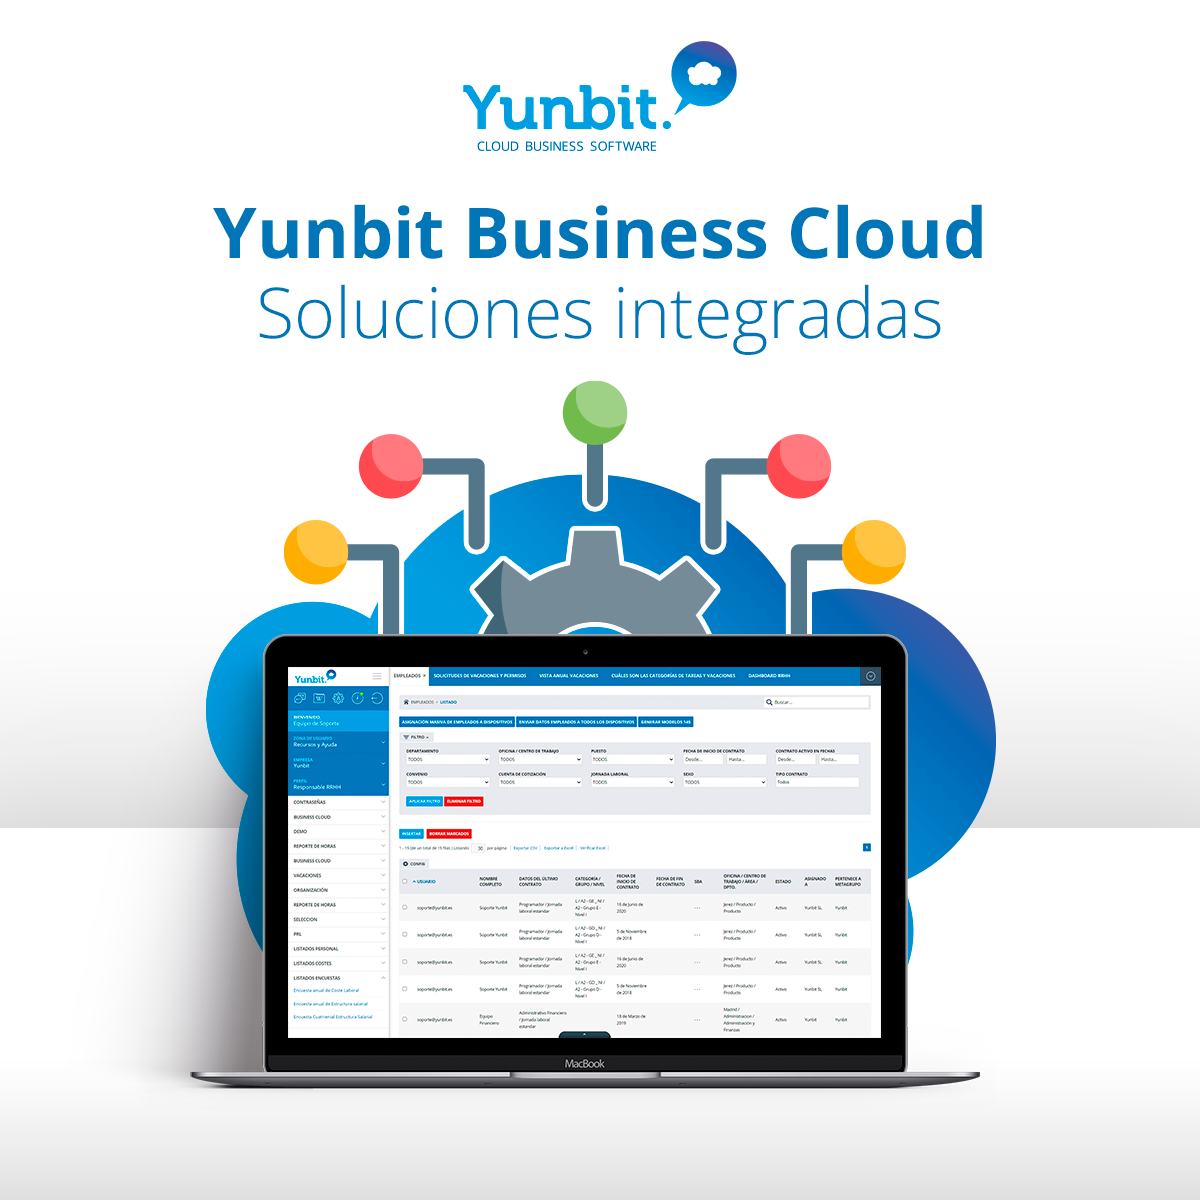 Yunbit Business Cloud, soluciones integradas